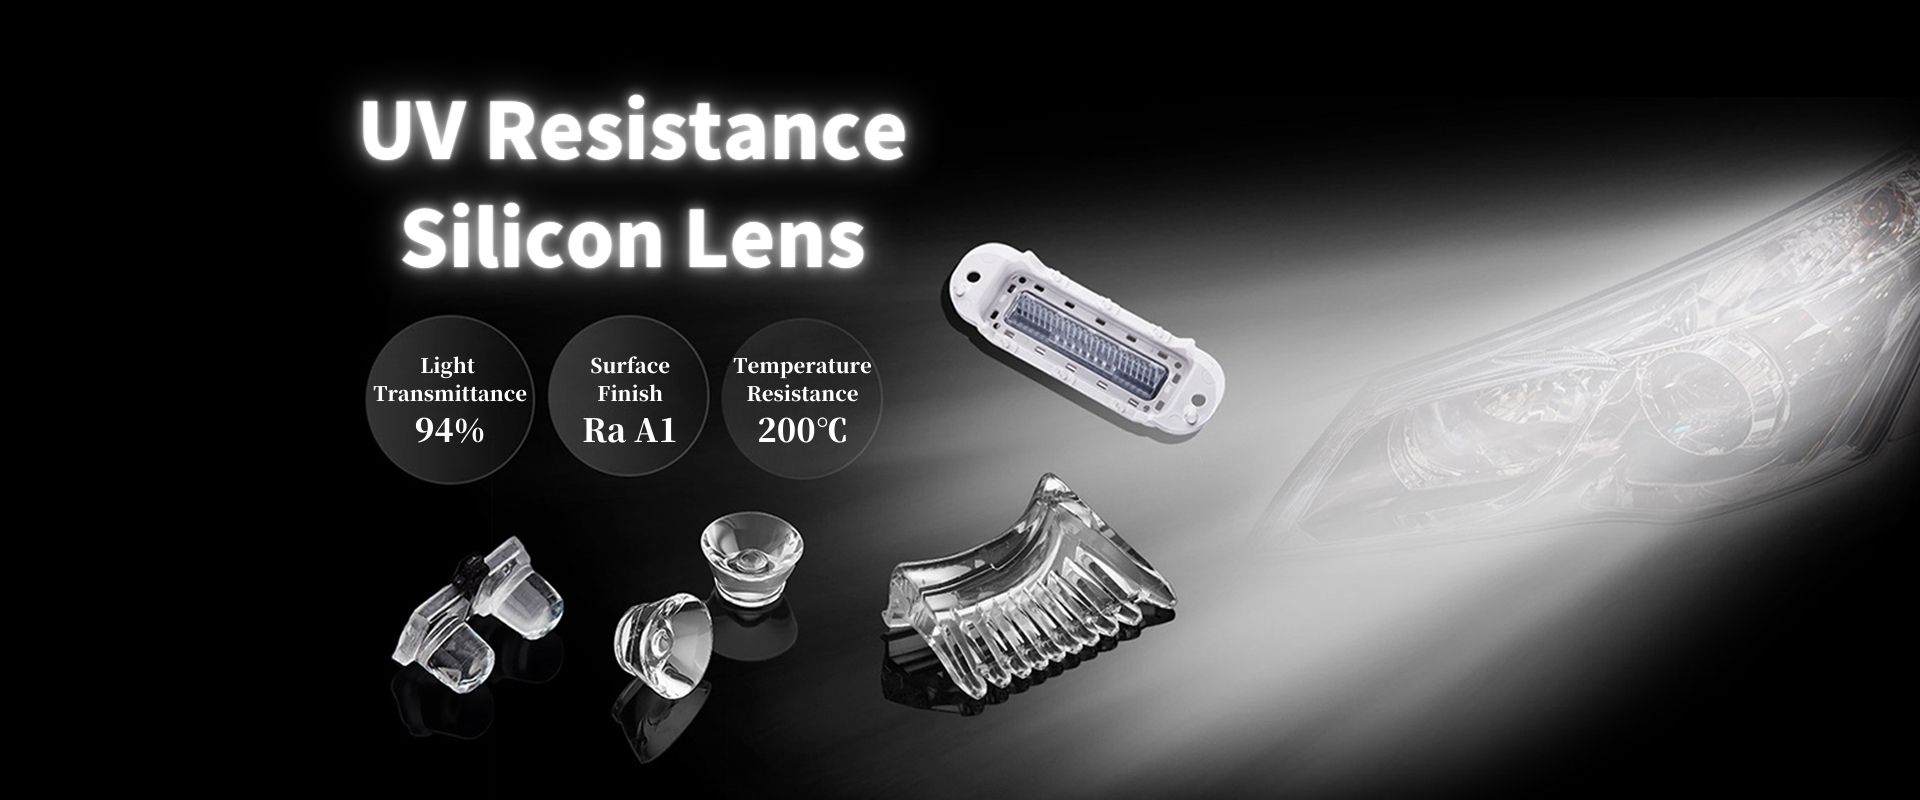 Silicon Lens